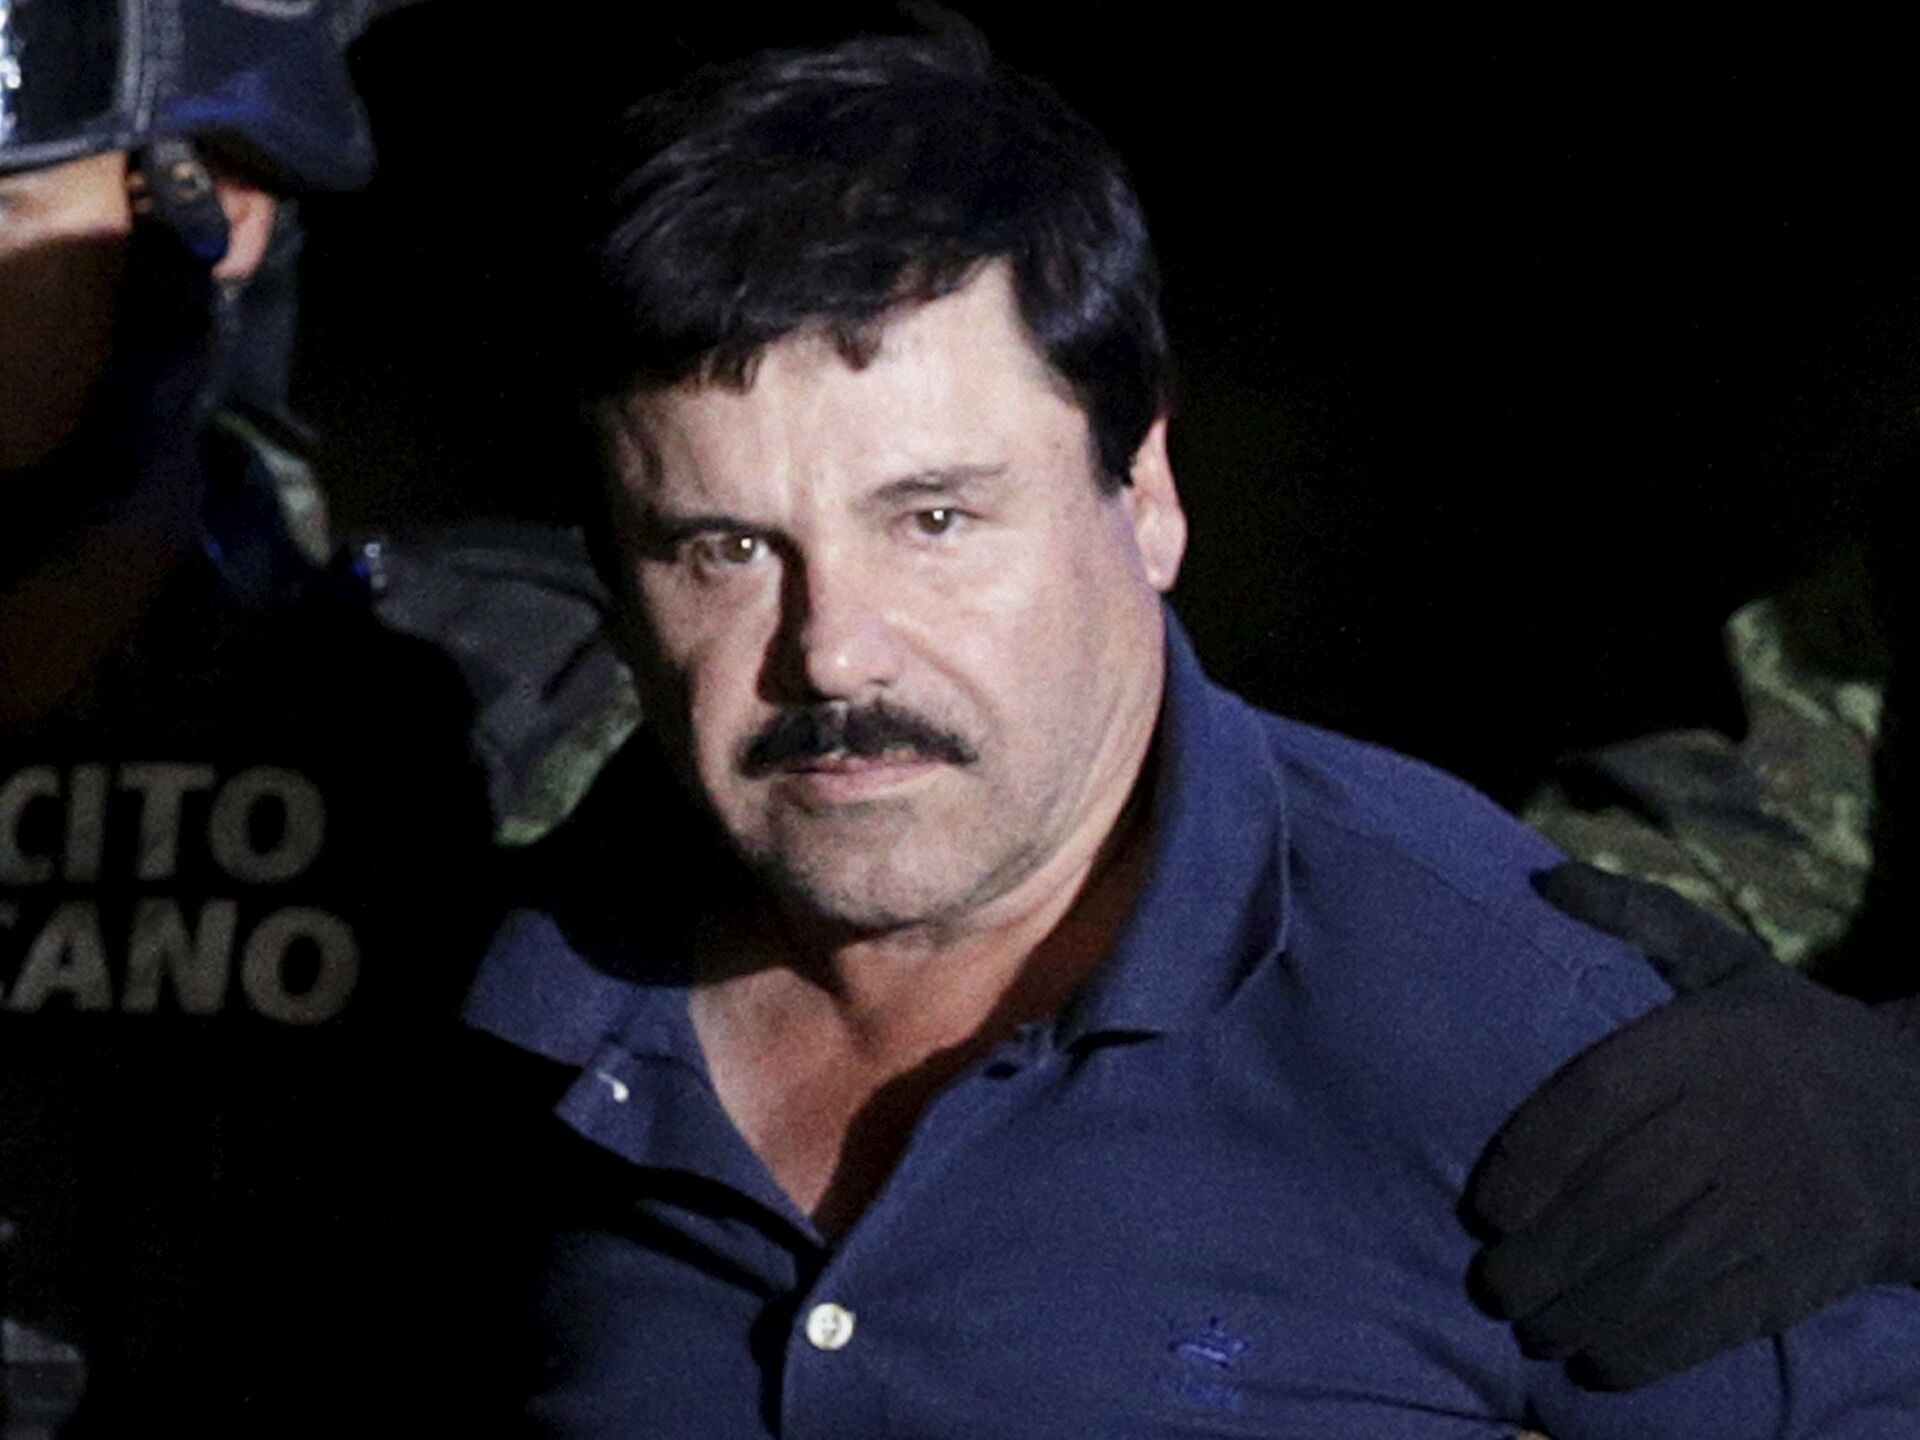 El Chapo Guzmán denuncia conducta inapropiada de miembros del jurado